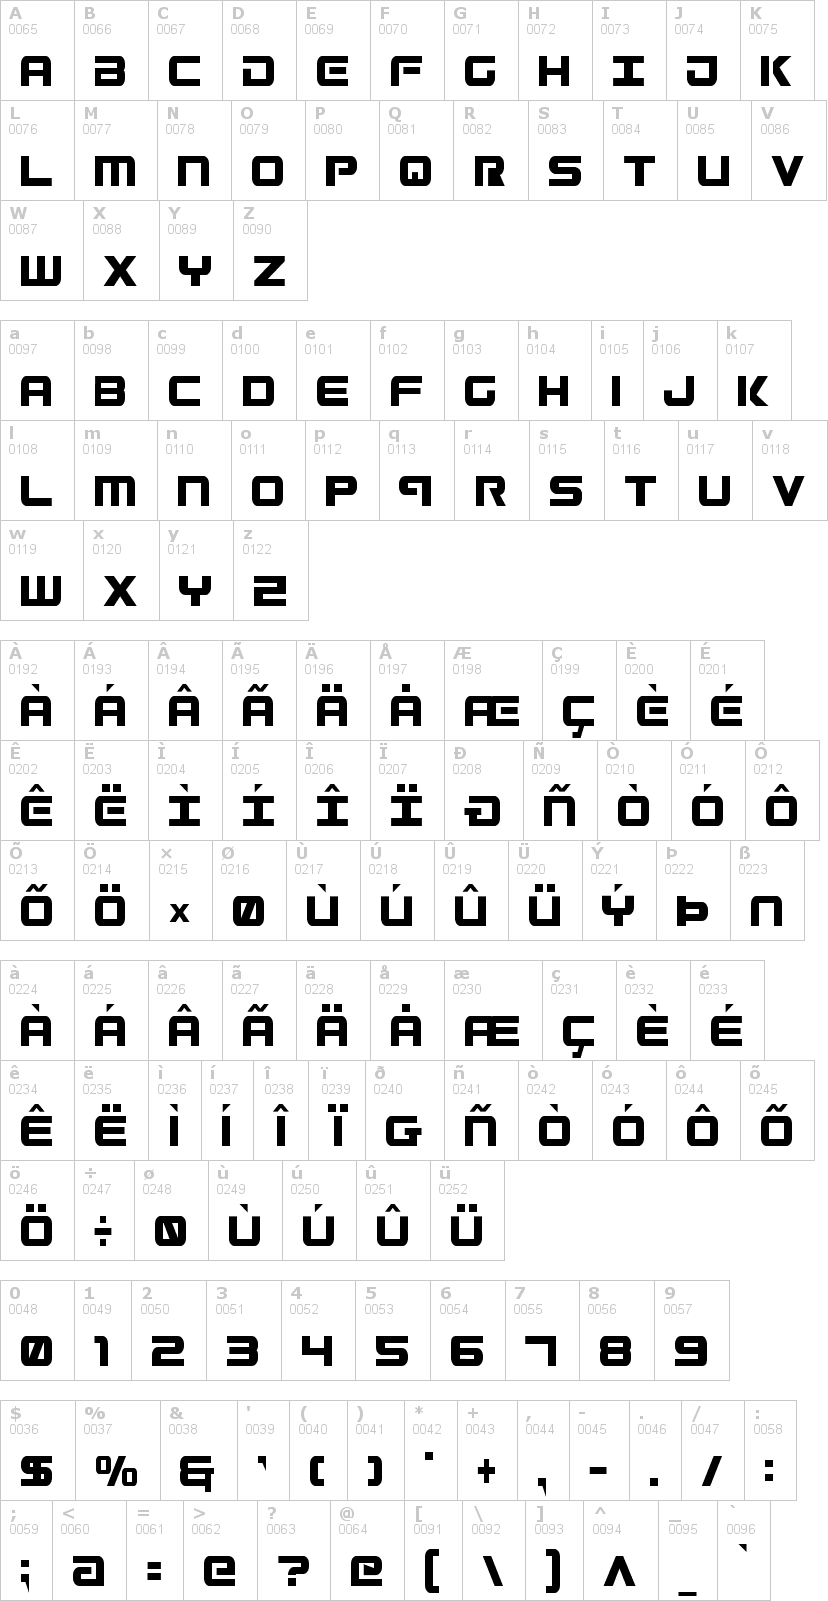 Lettere dell'alfabeto del font gunship con le quali è possibile realizzare adesivi prespaziati